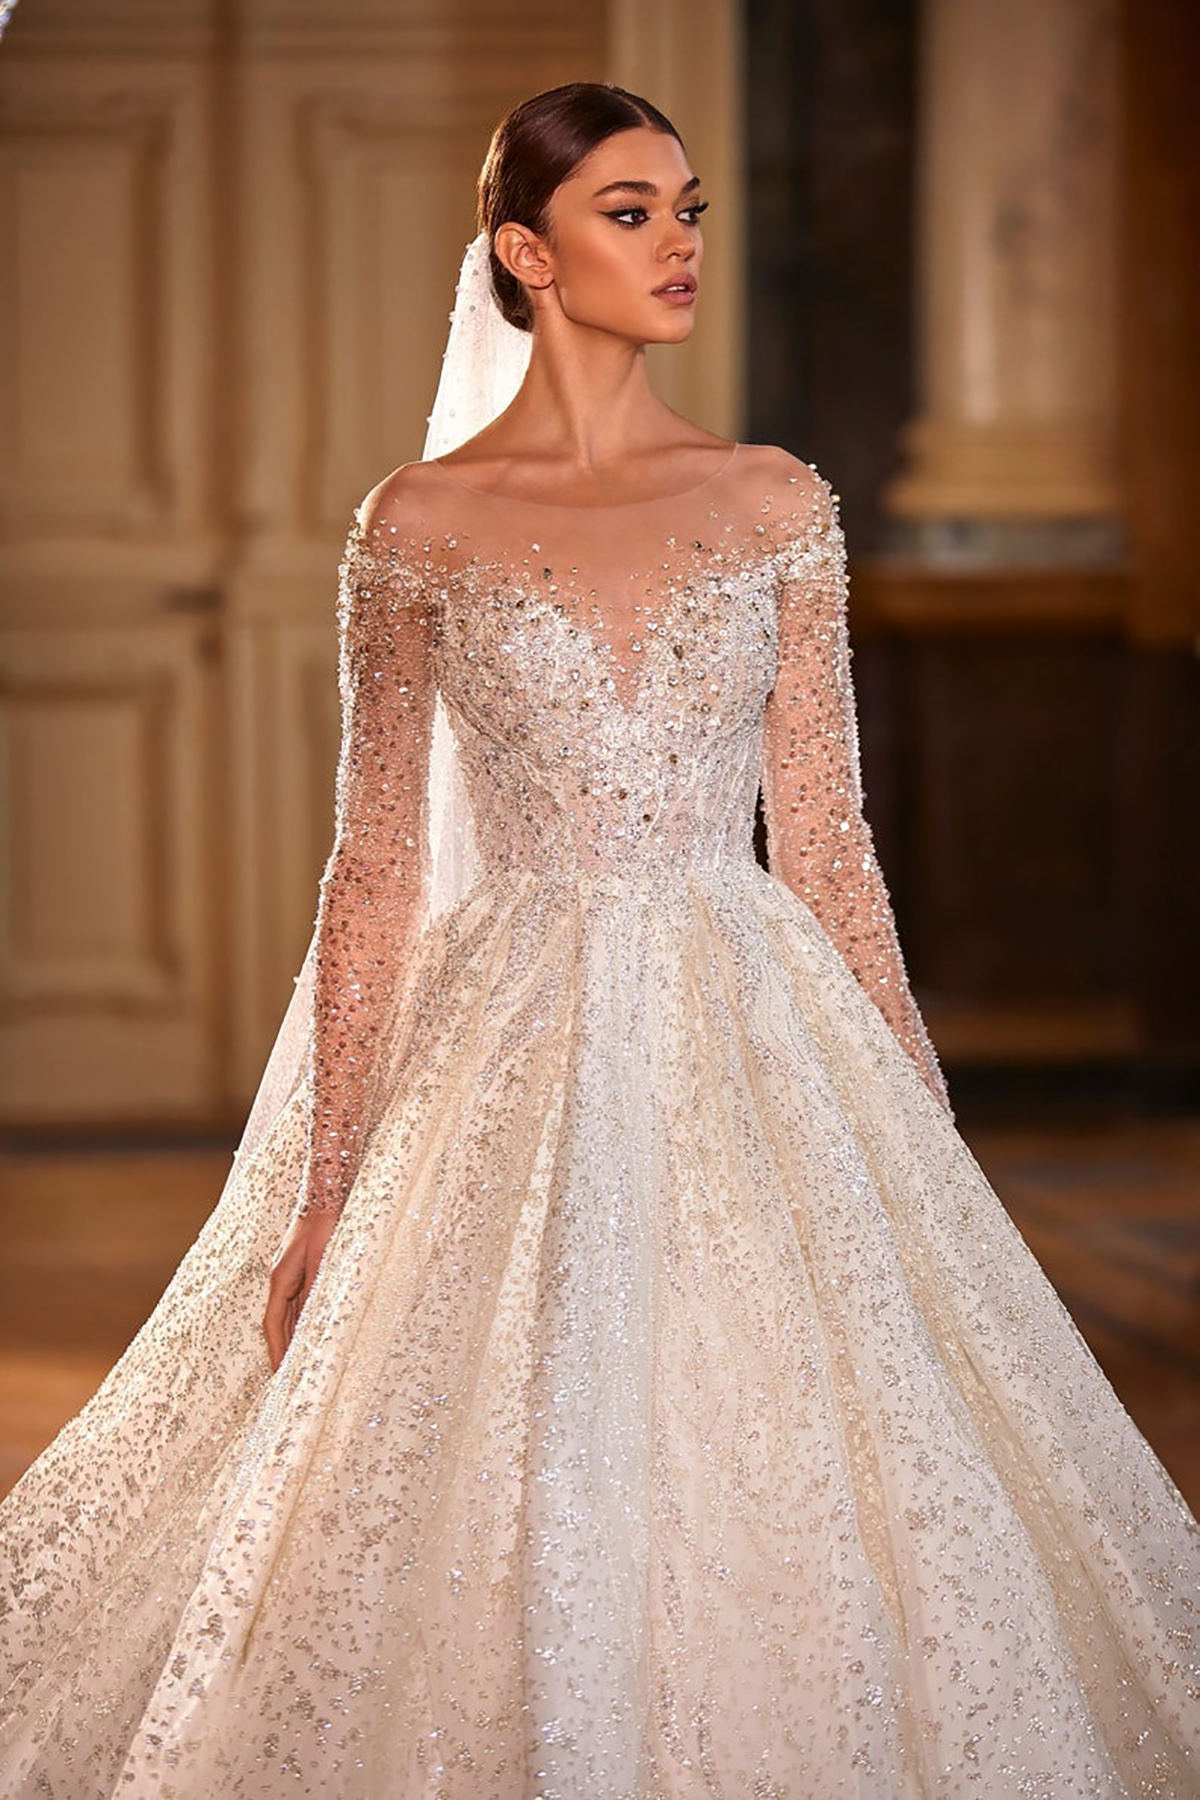 Brudklänning Modern Shine A-Line Bröllopsklänningar med Crystal Applique New Purity Pärlor Anpassade Borst Train Robes de Mariee Vestidos de Novia